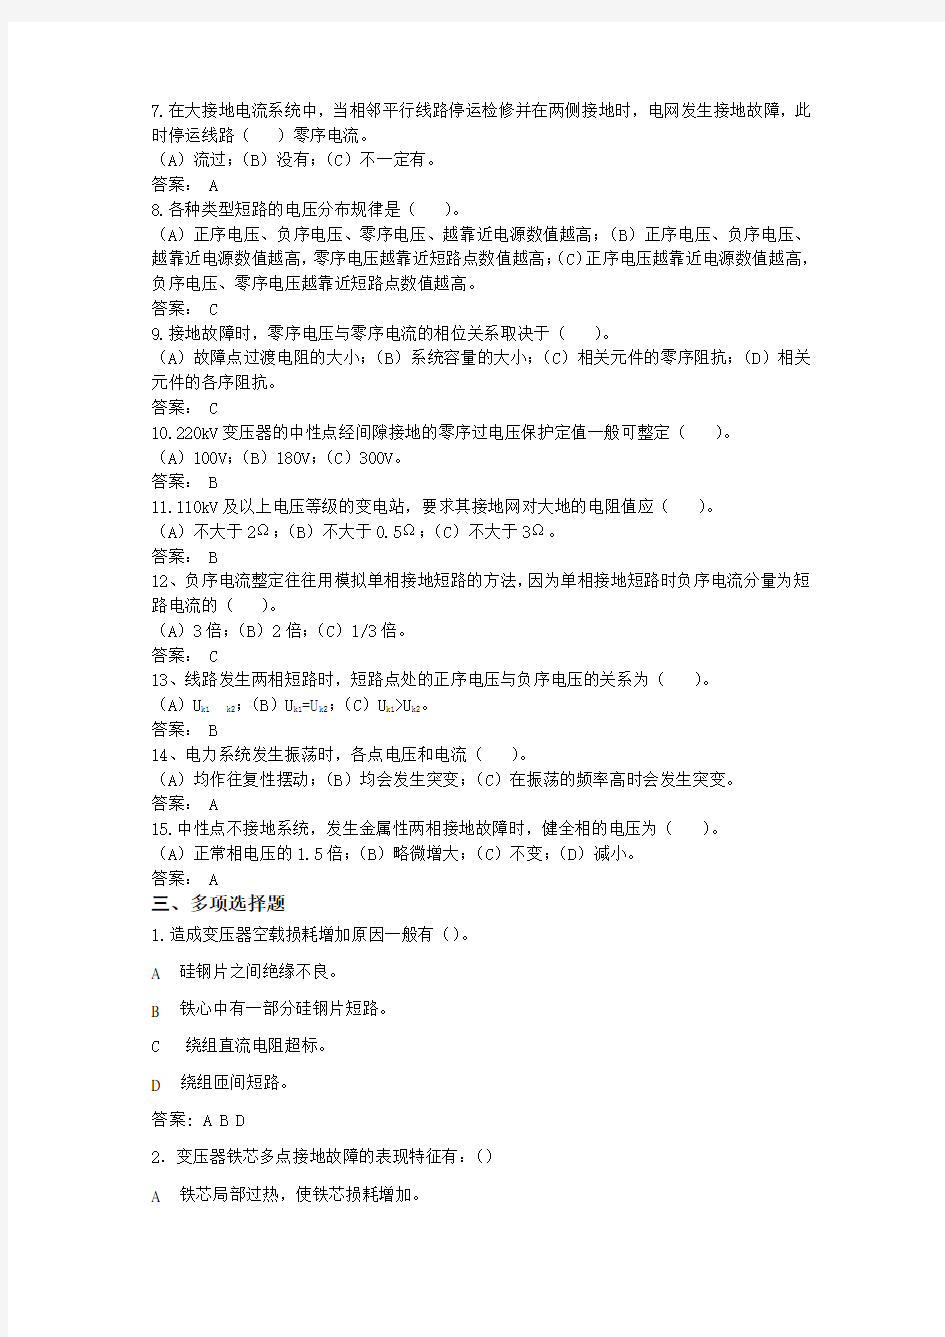 国网四川省电力公司检修公司选拔考试卷题库(答案) (6)